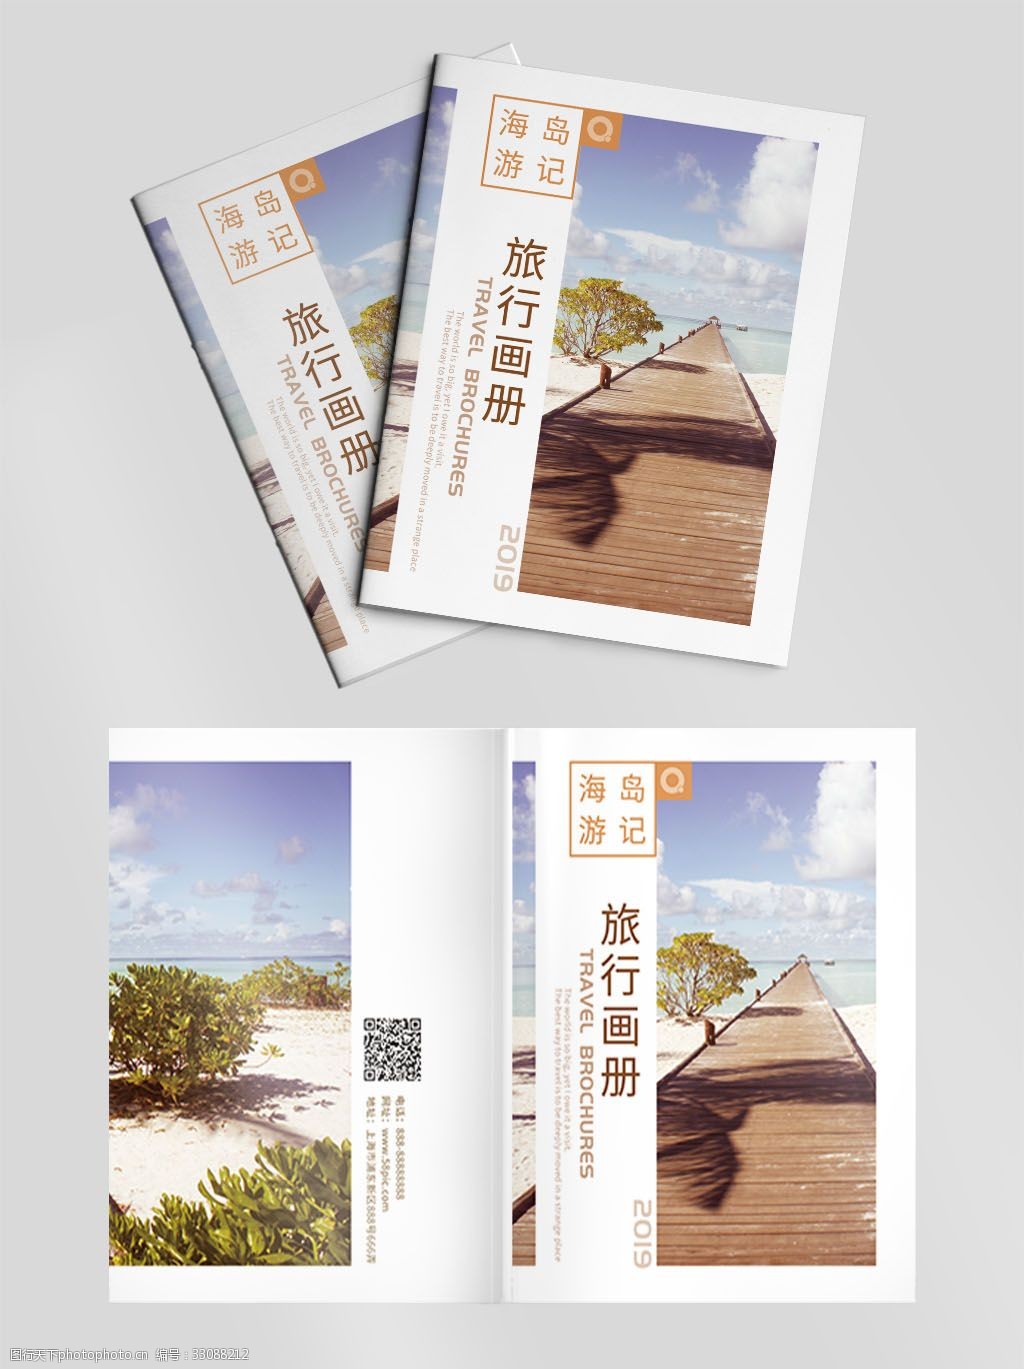 游记旅行宣传画册封面 海岛 马尔代夫 海南岛 游记 旅行 旅游 宣传册